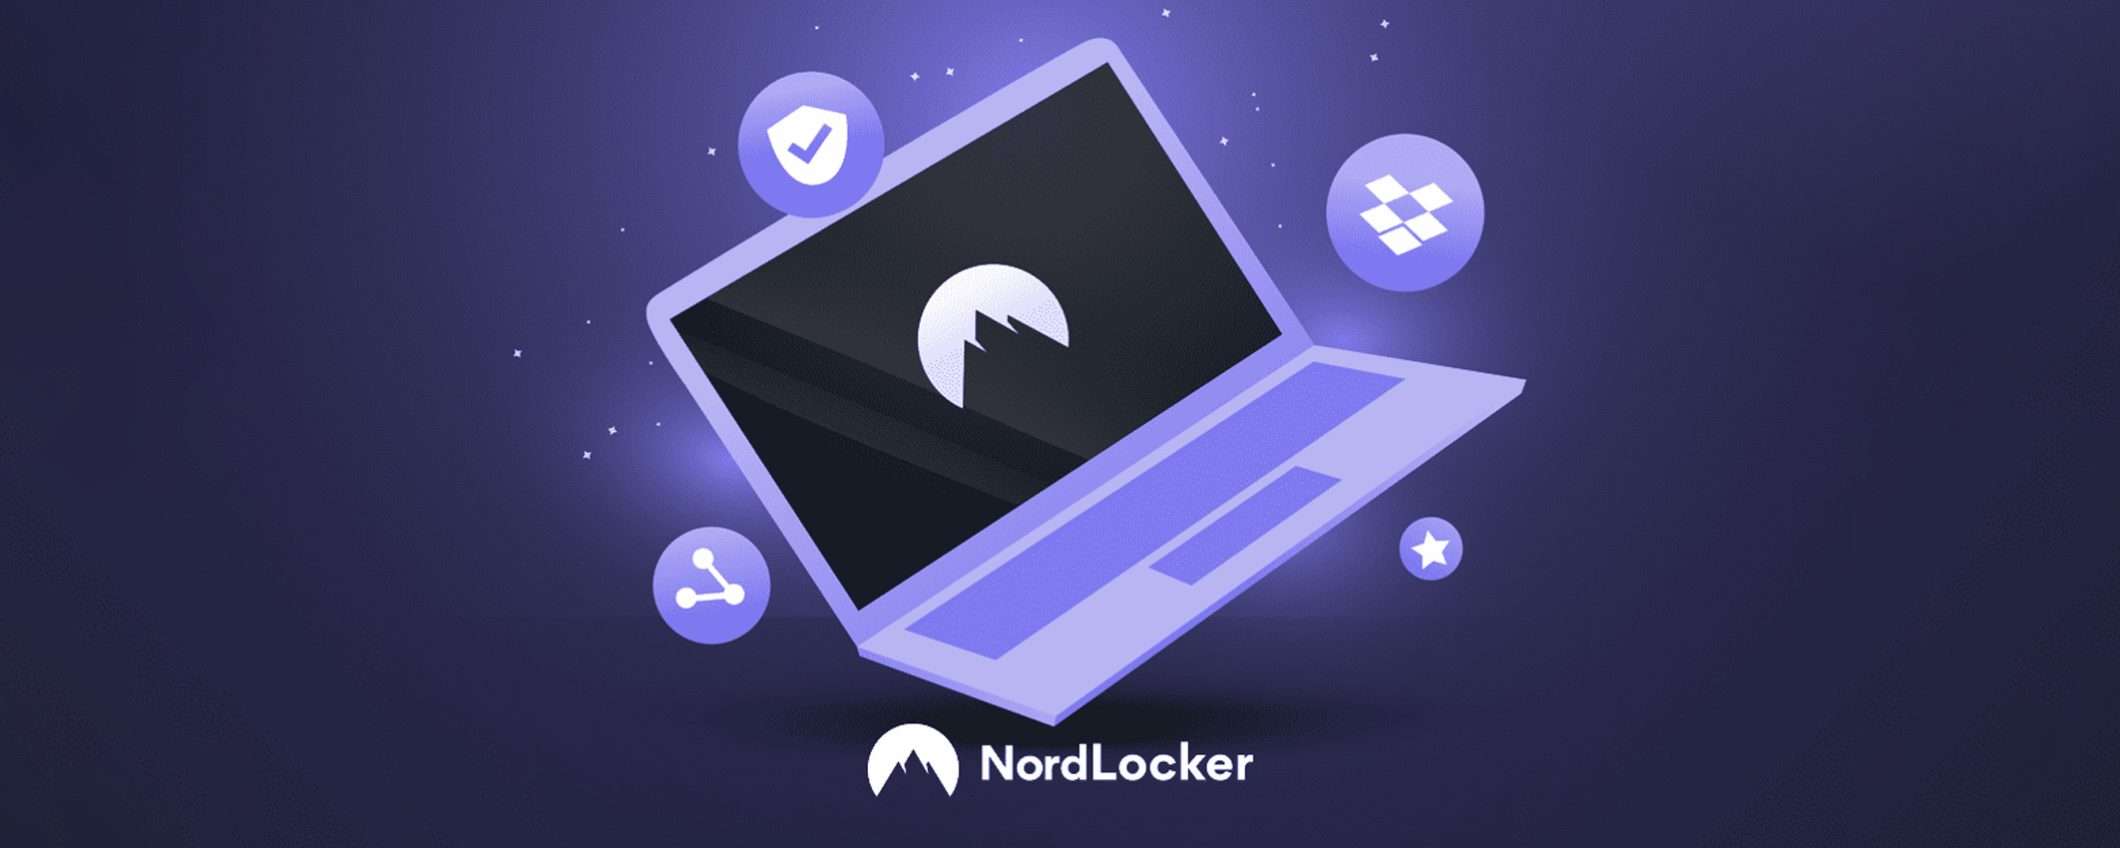 Dati aziendali sempre al sicuro con NordLocker Business (-70%)